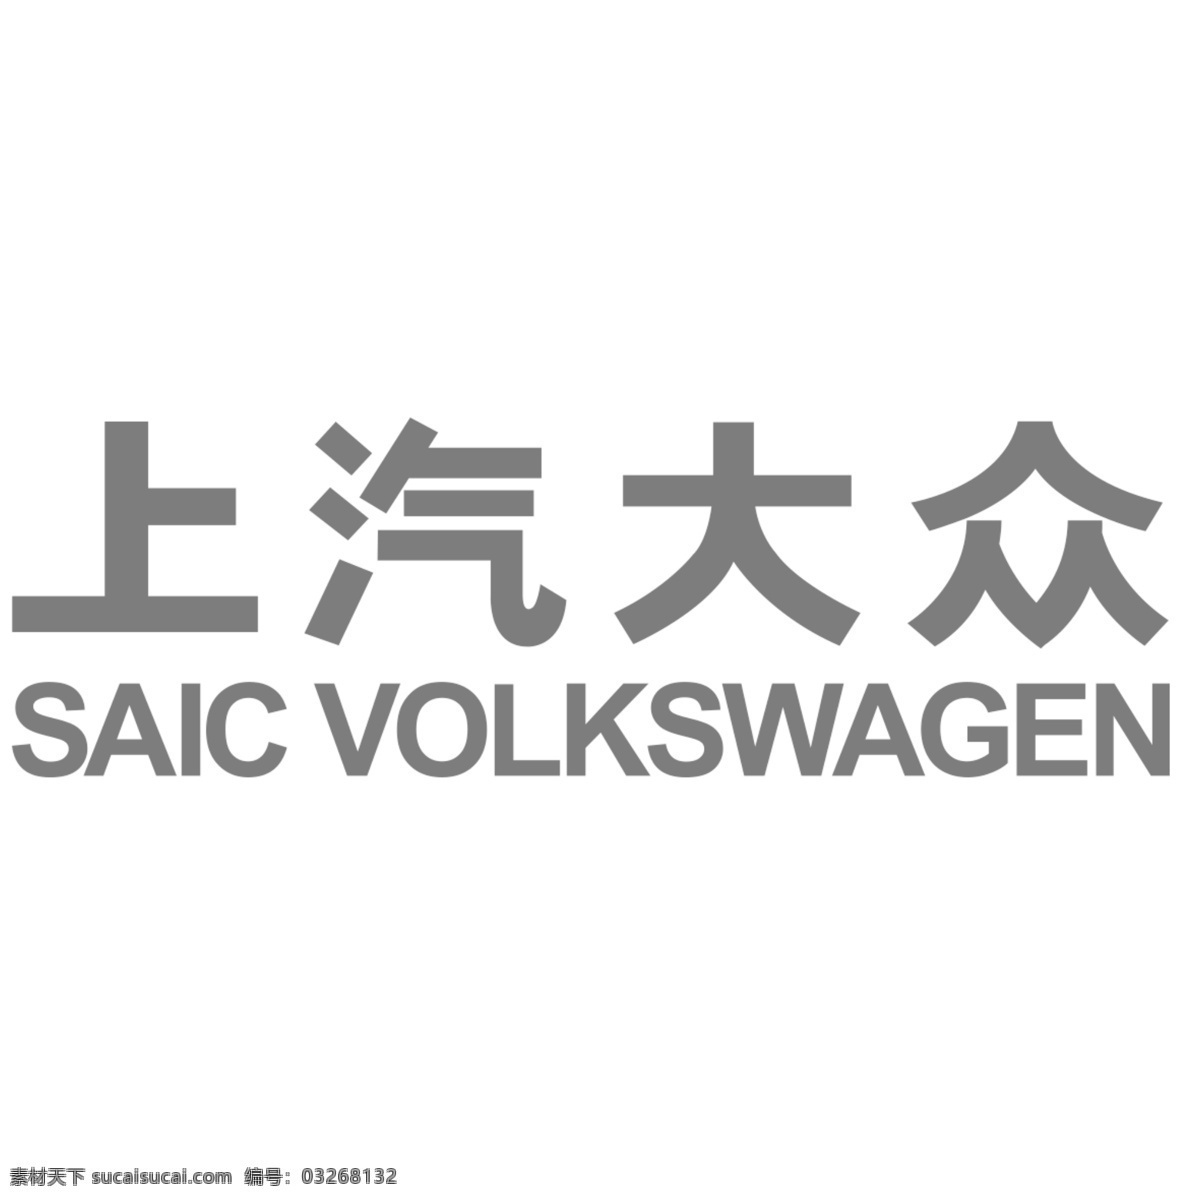 上汽 大众 新版 logo 上海大众 上汽大众 汽车产品 标志图标 企业 标志